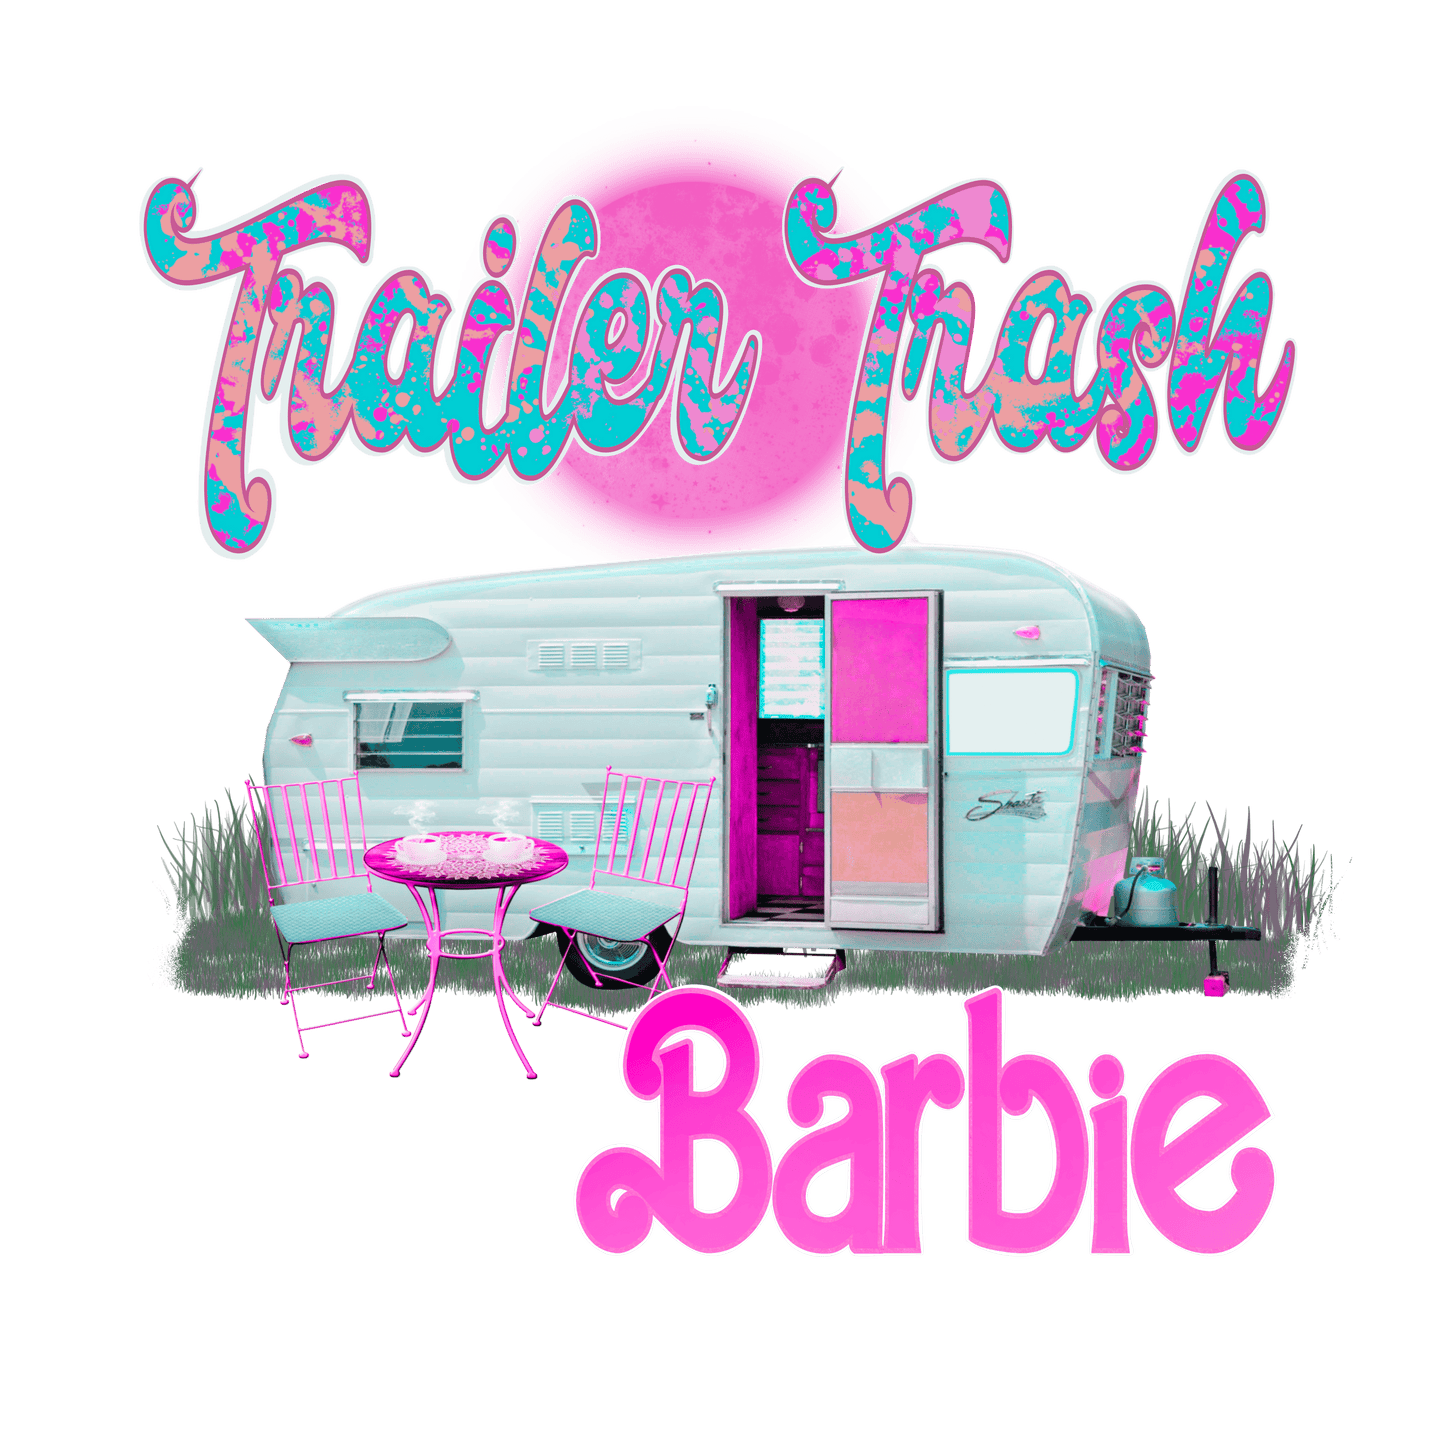 BRB35 Trailer Trash Barbie Full Color DTF Transfer - Pro DTF Transfers